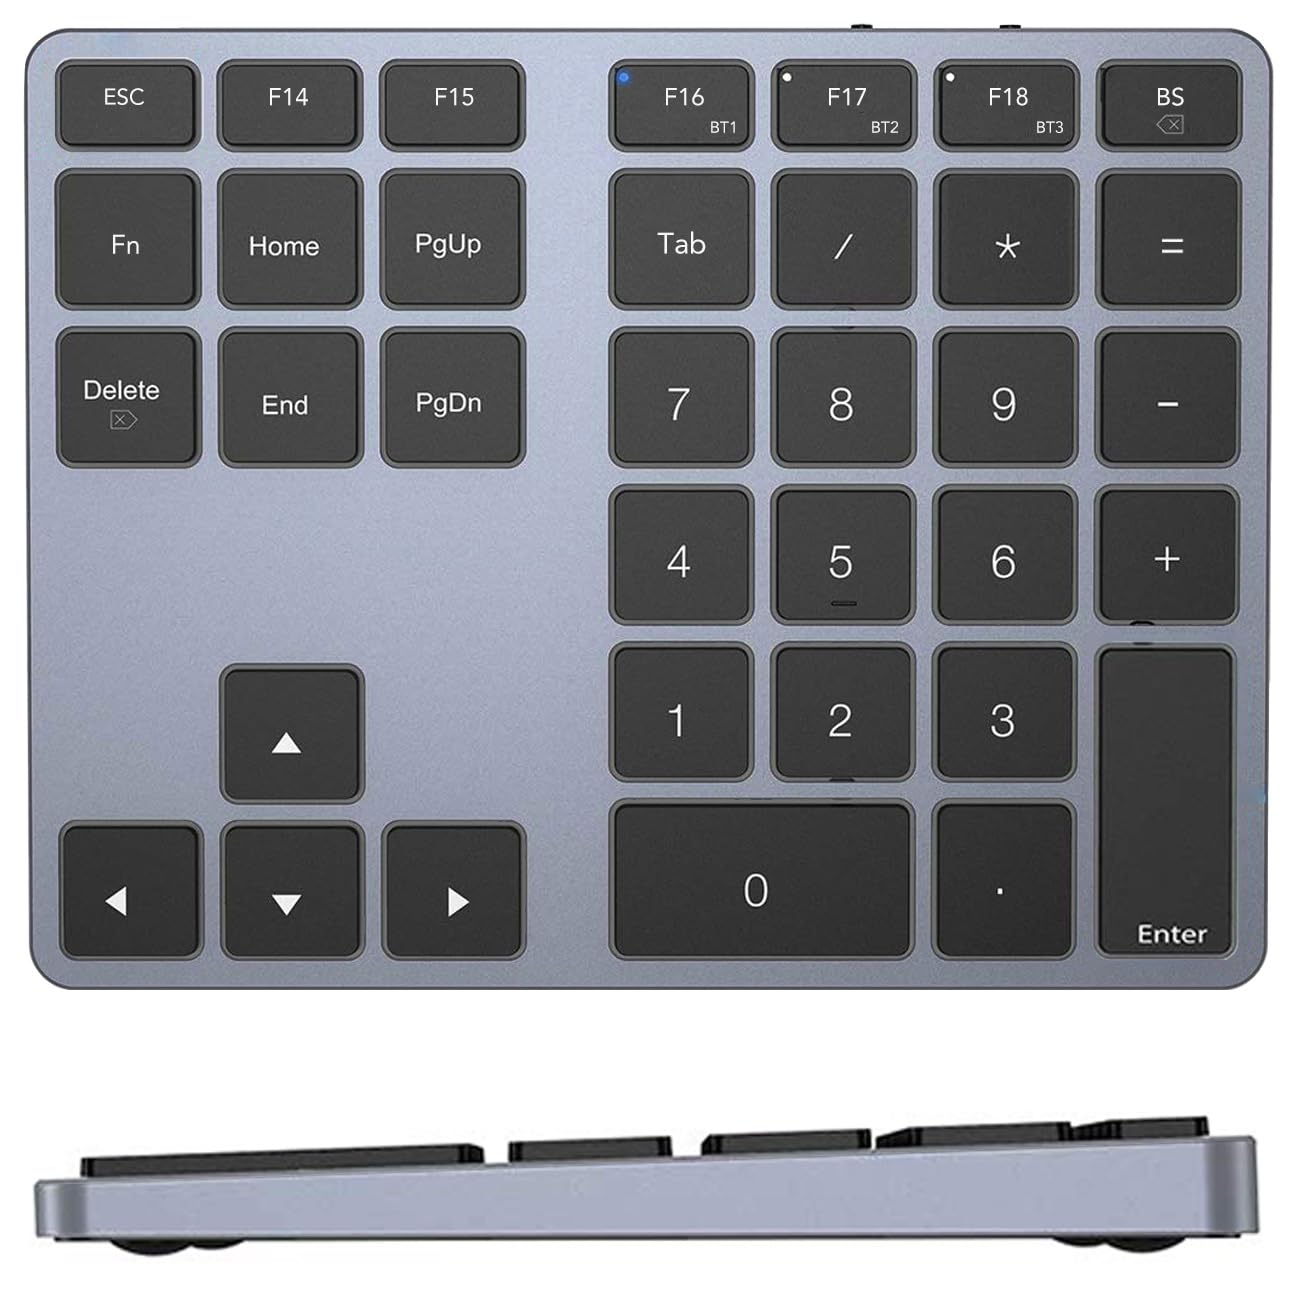 テンキー Bluetooth KcBlueJP ワイヤレス 数字 キーボード MacOSショートカットキー搭載 複数のBluetooth接続が可能 35キー 拡張 充電式 スリム MAC用に設計 アルミ合金製 MacBook Pro/Air,iPad Pro/Air/iPhone/Windows対応